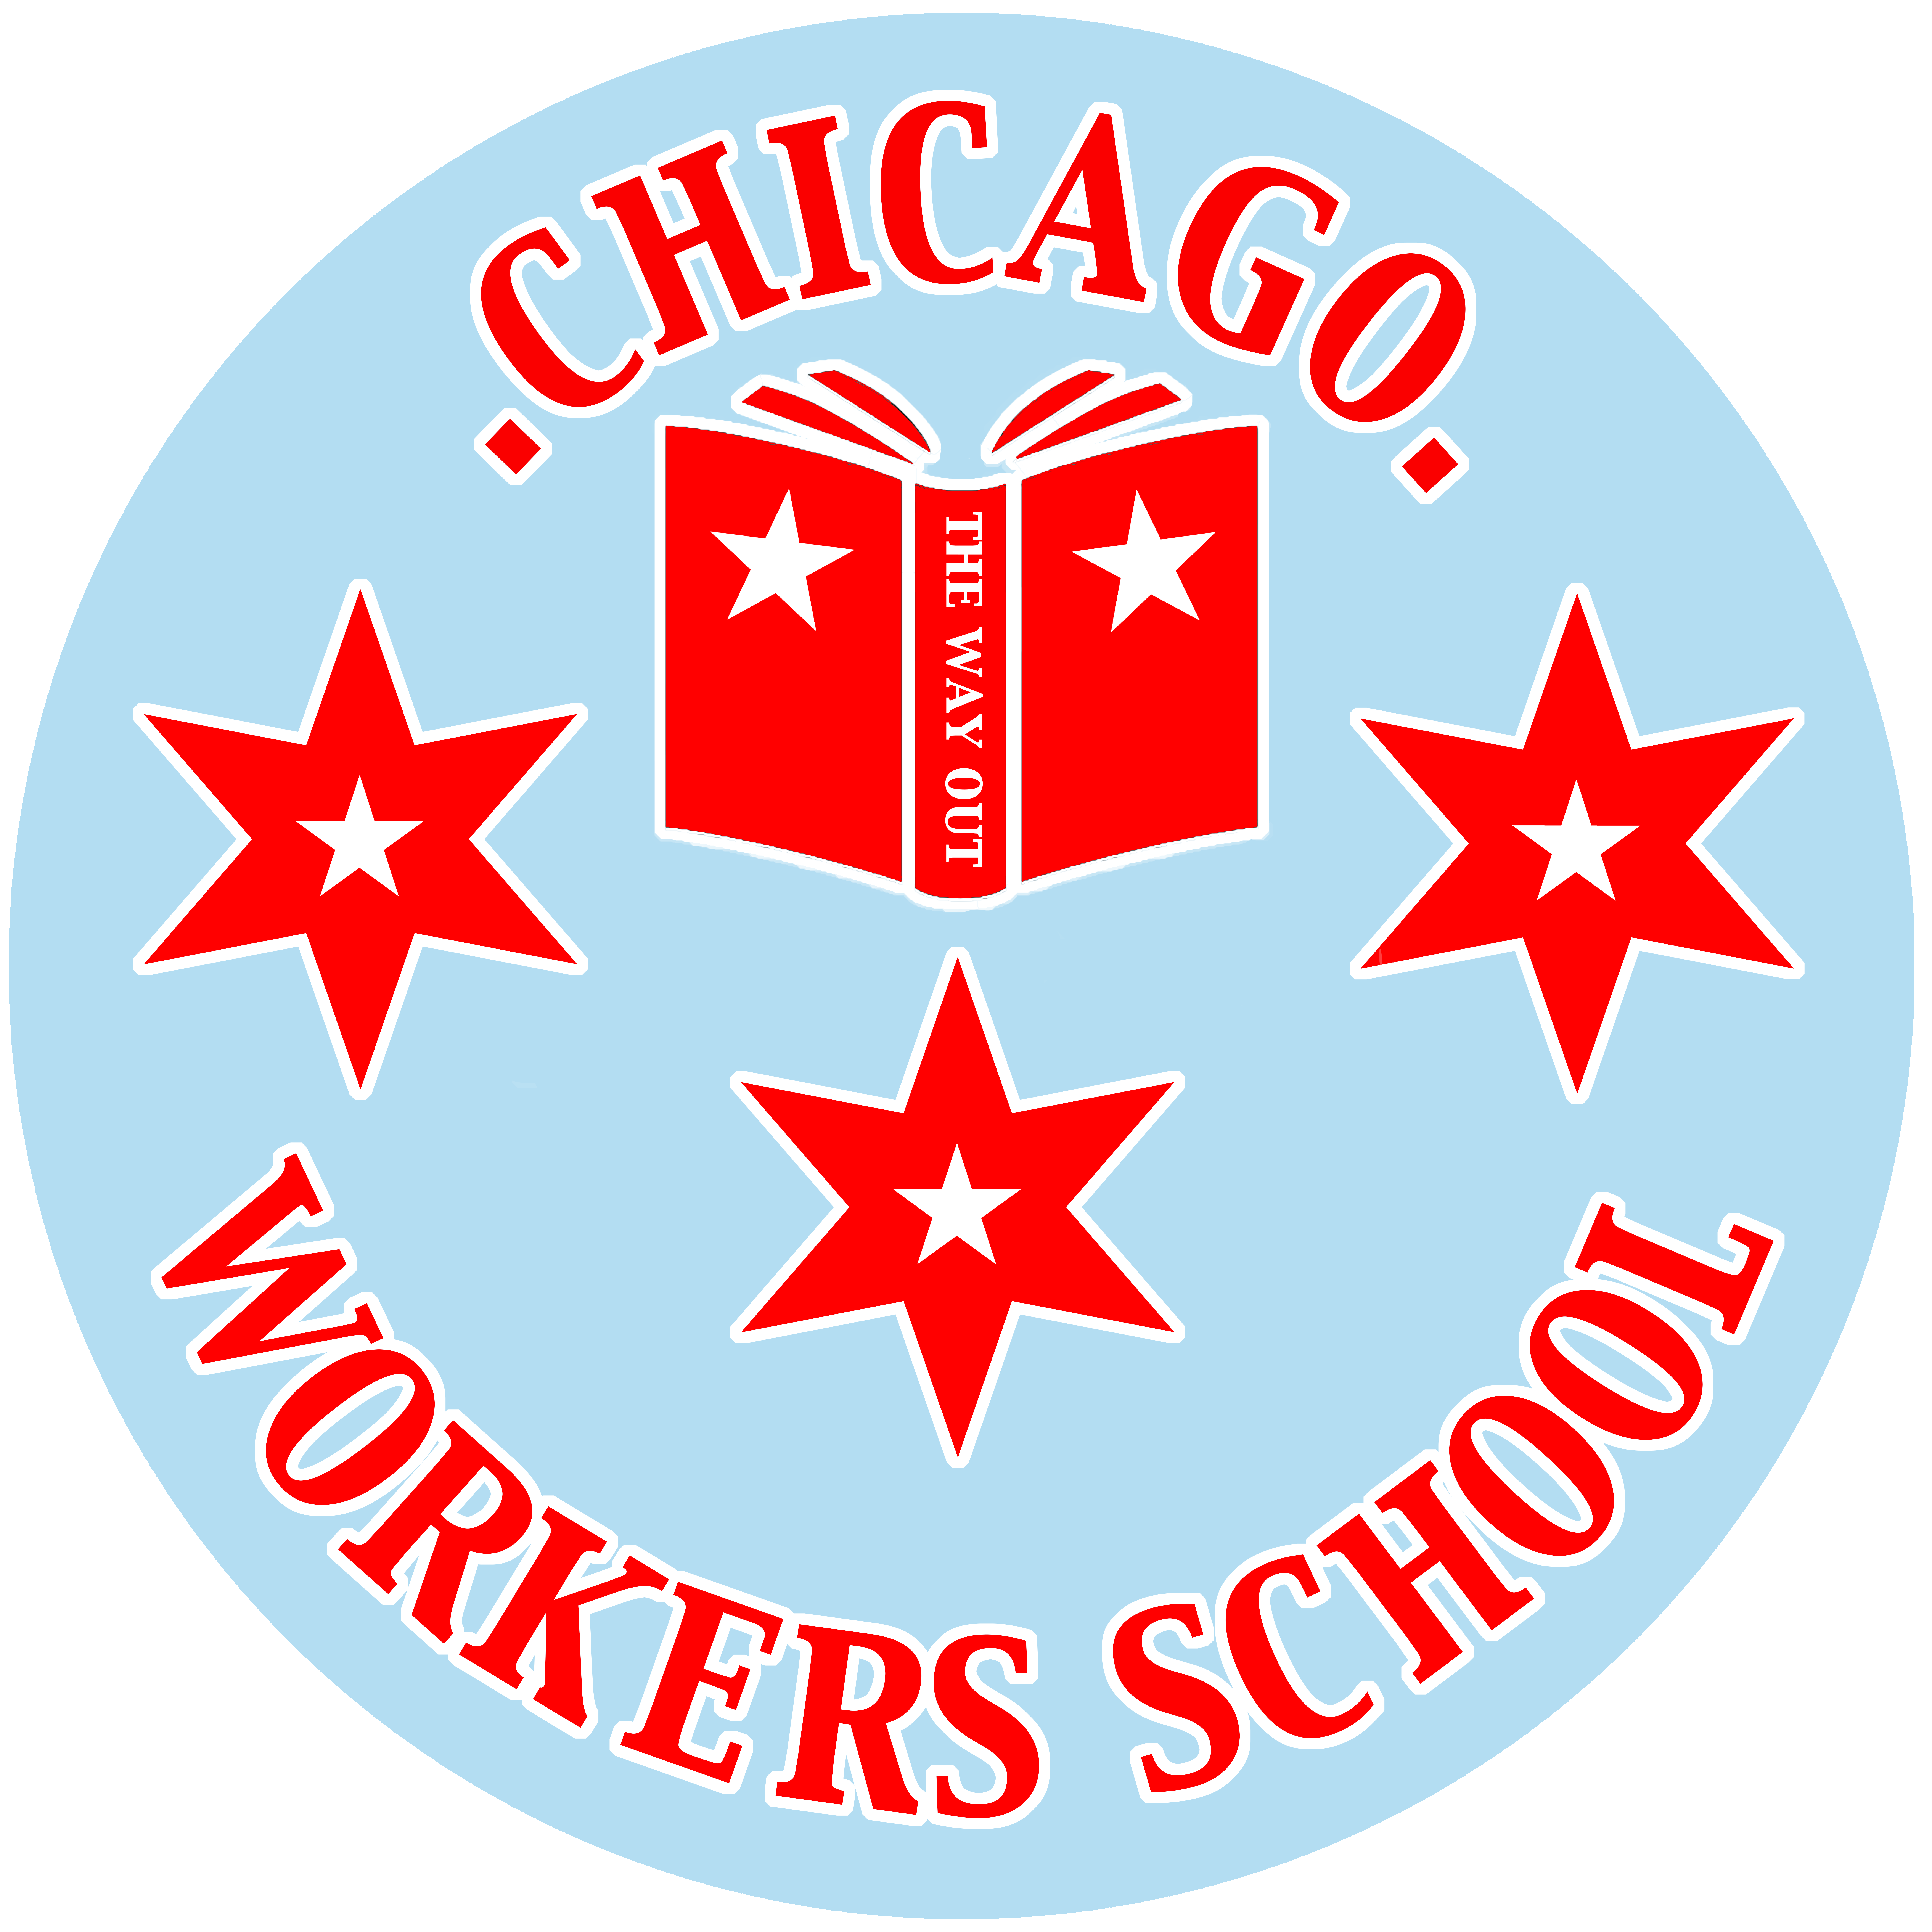 Chicago Workers' School